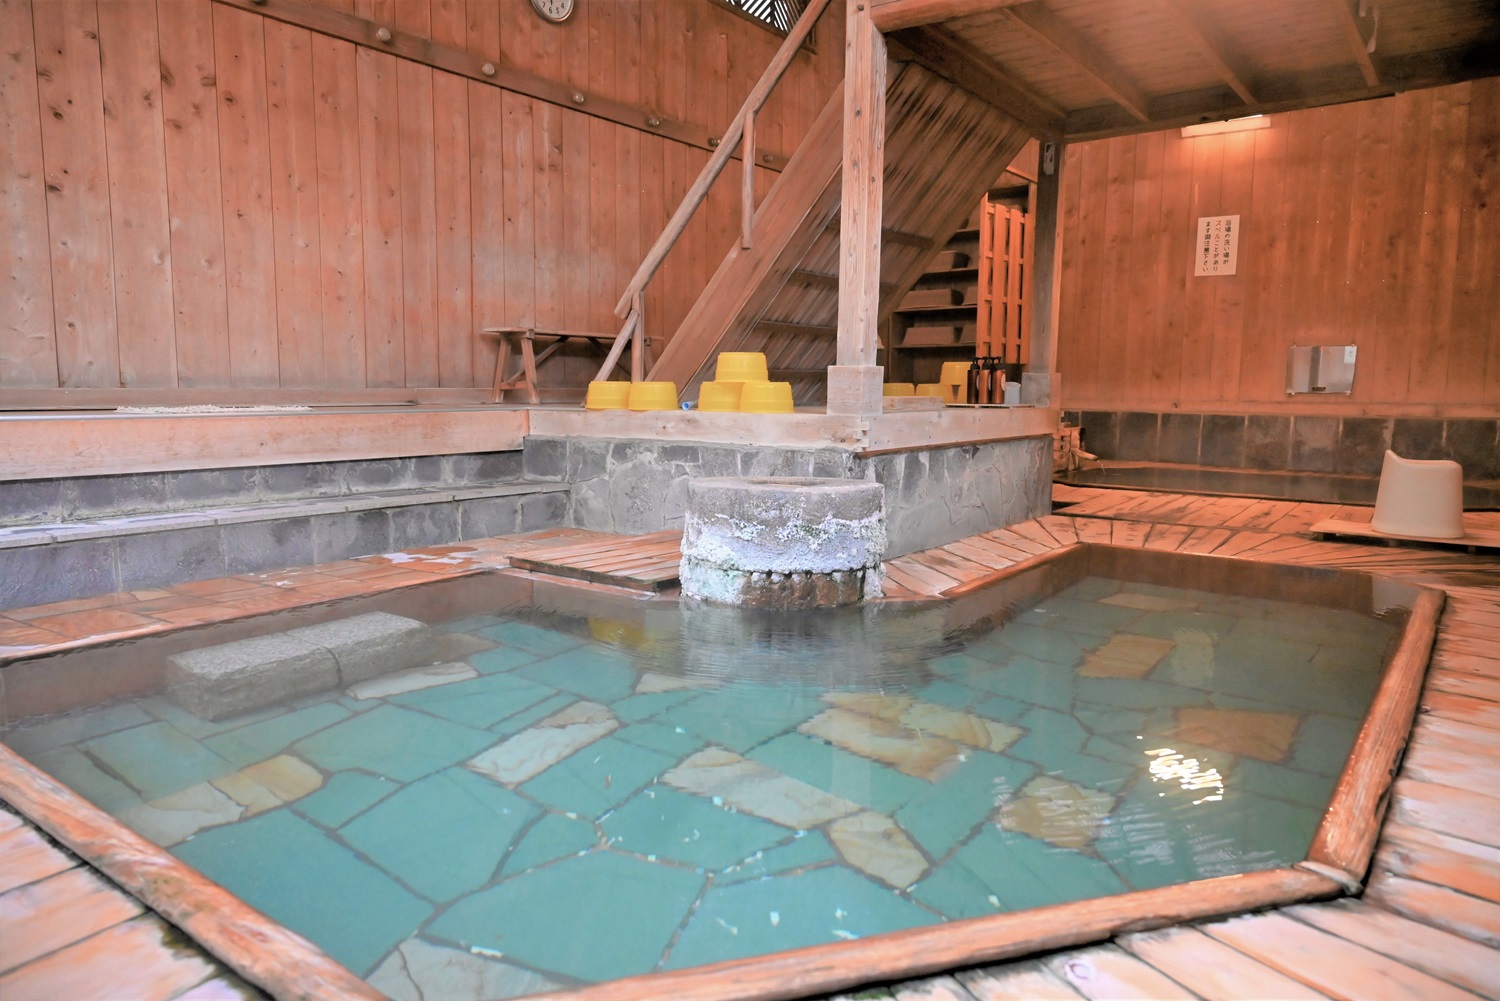 昭和レトロな趣がある混浴の大浴場は天井、壁、浴槽など総檜造り。2つの湯船があり、J字型の湯船にはモザイクタイルが敷かれている。